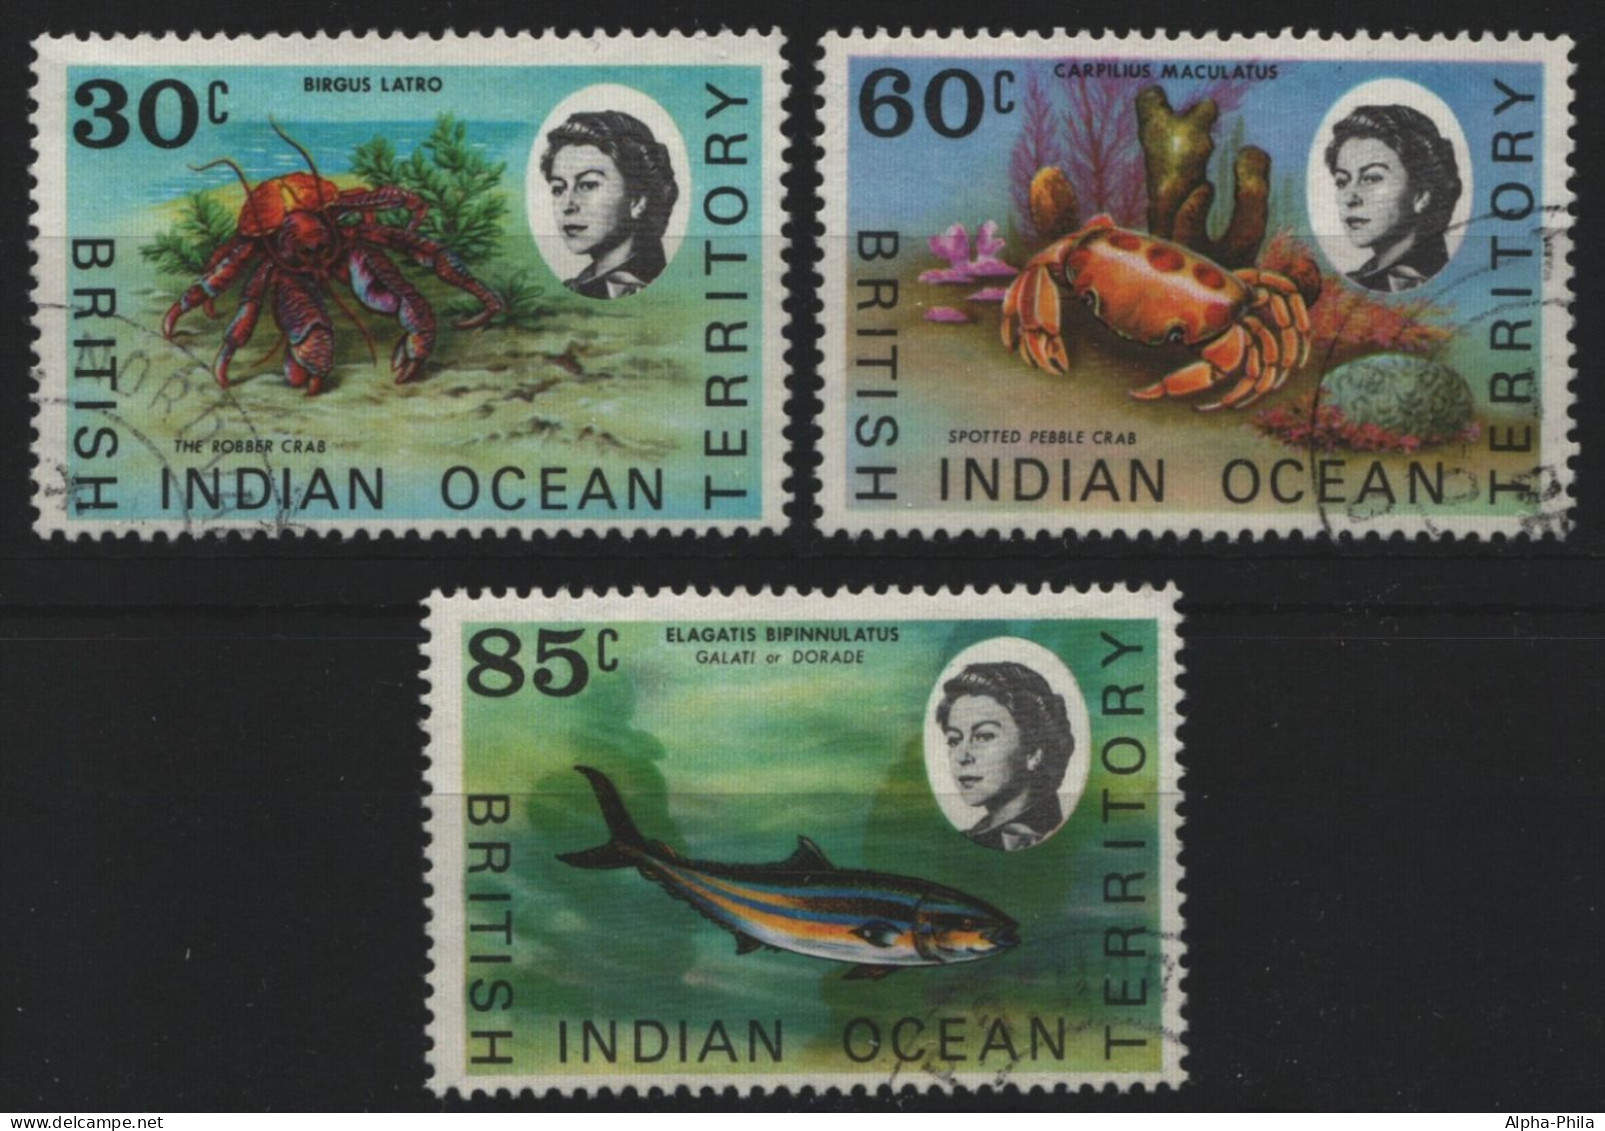 BIOT 1970 - Mi-Nr. 36-38 Gest / Used - Meeresleben / Marine Life - British Indian Ocean Territory (BIOT)